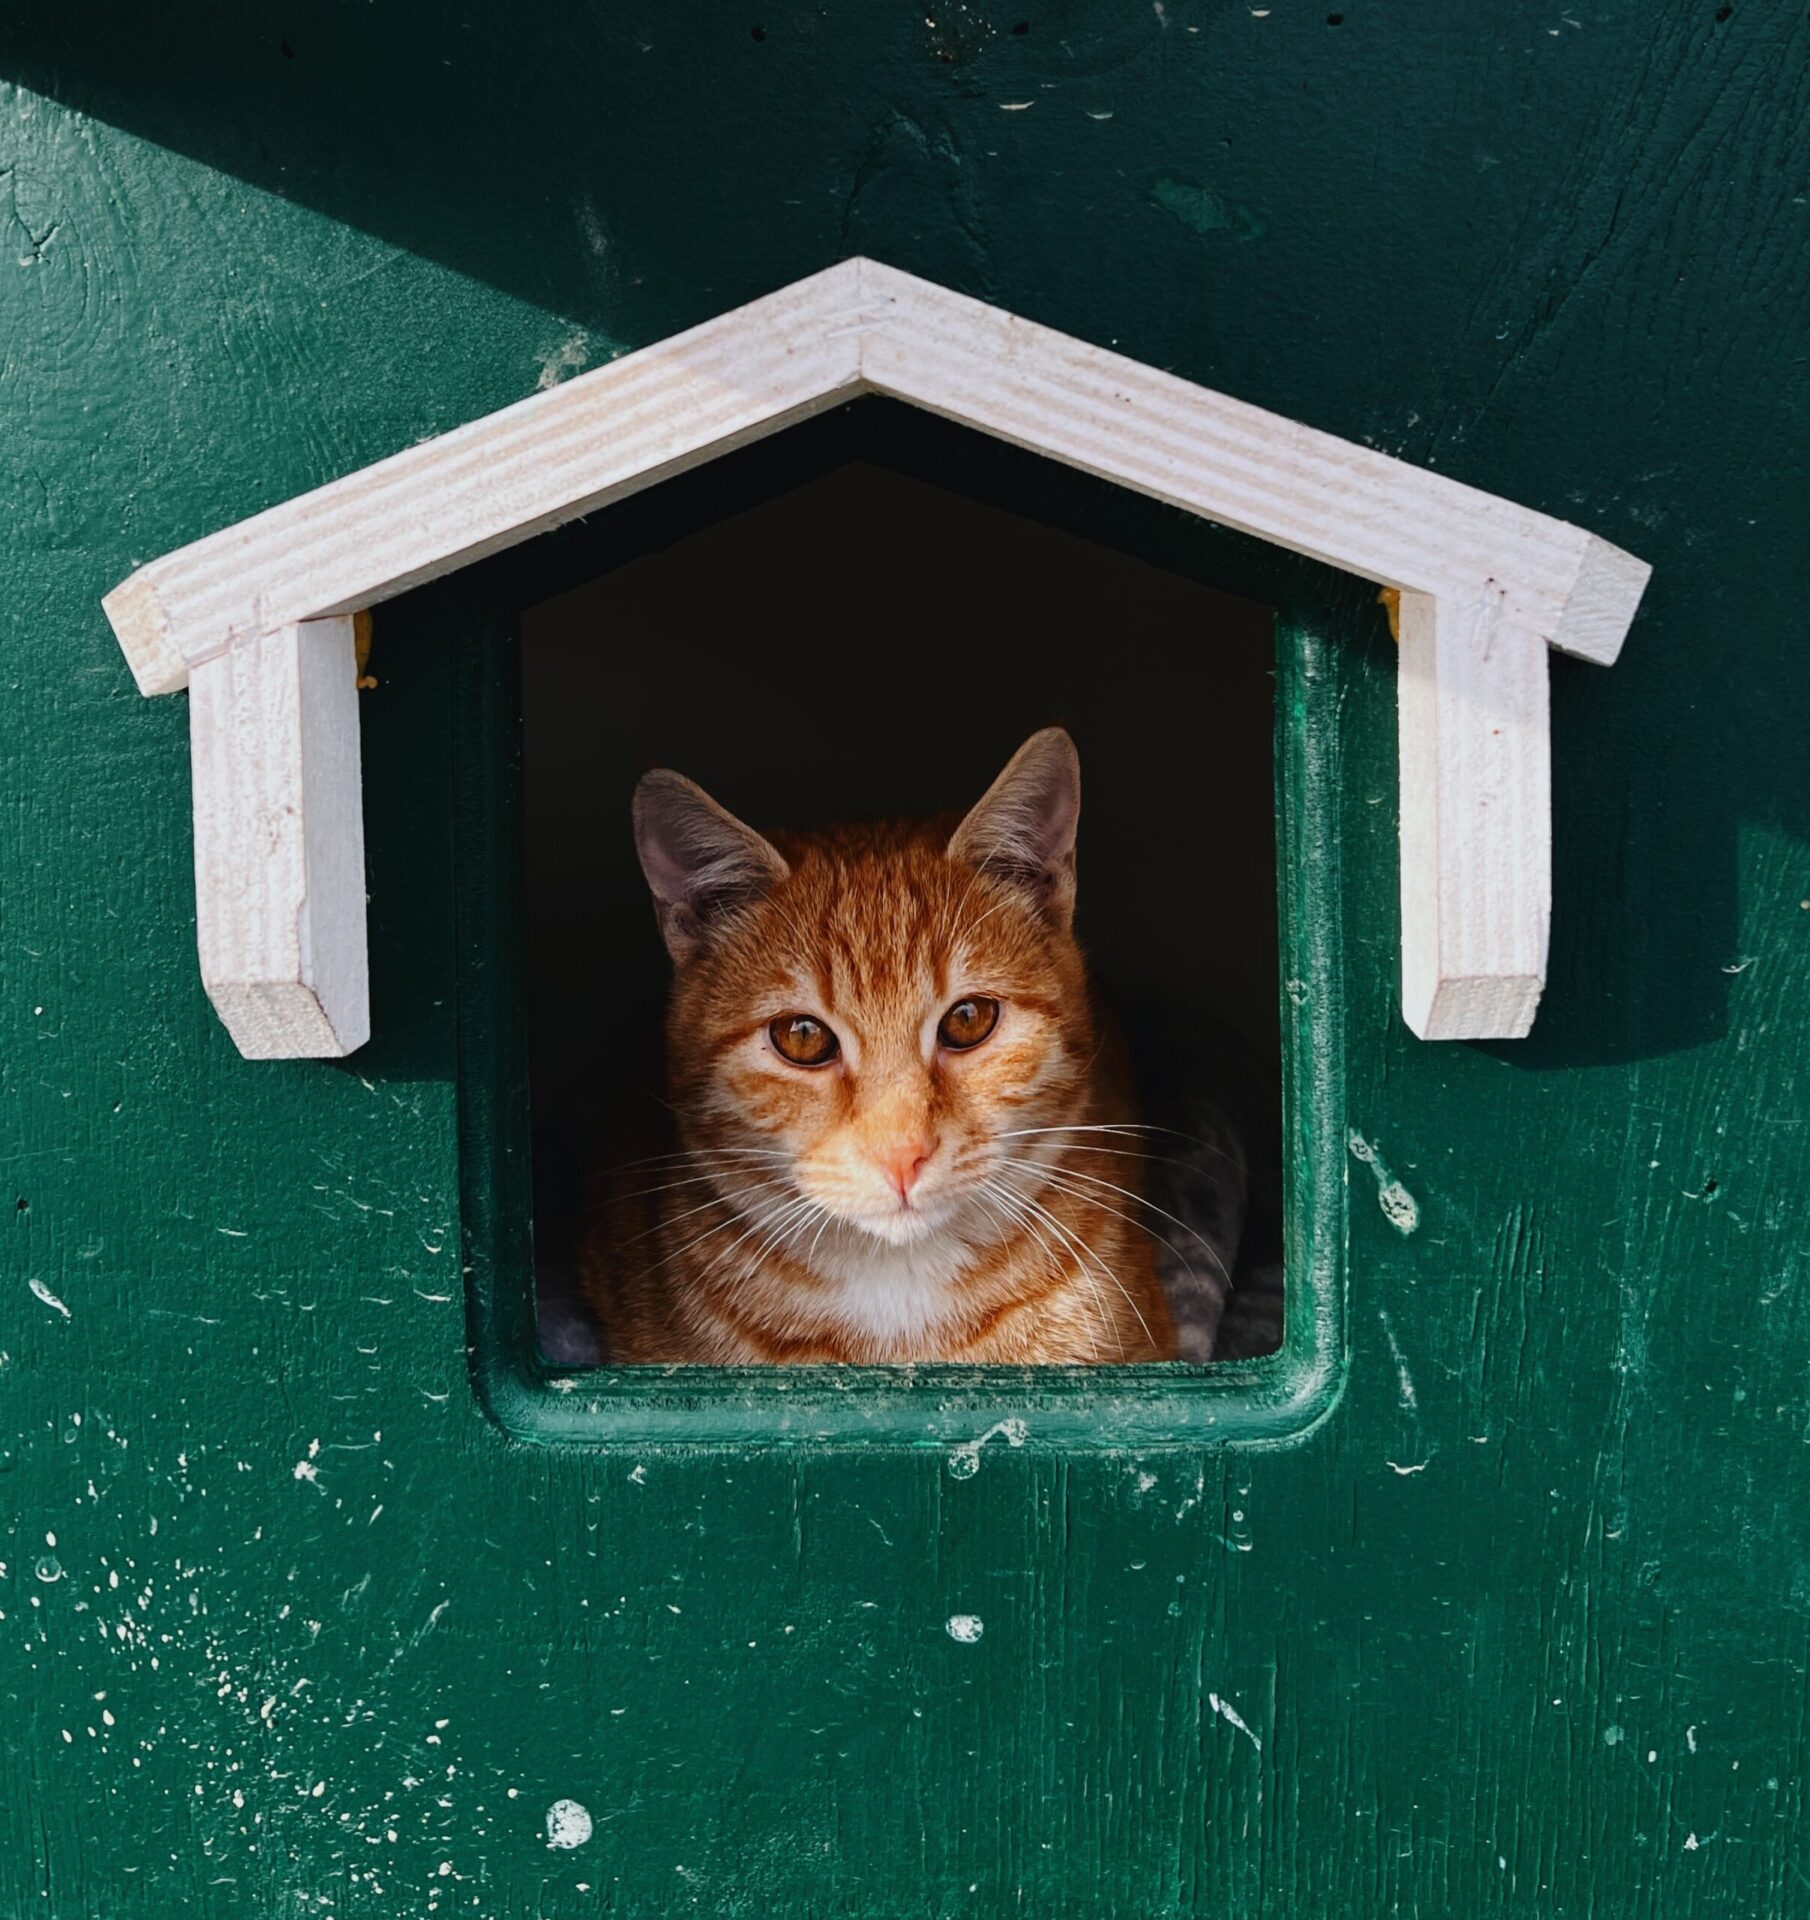 Kattelem i glasdør | Priser, viden & 3 uforpligtende tilbud - Klik